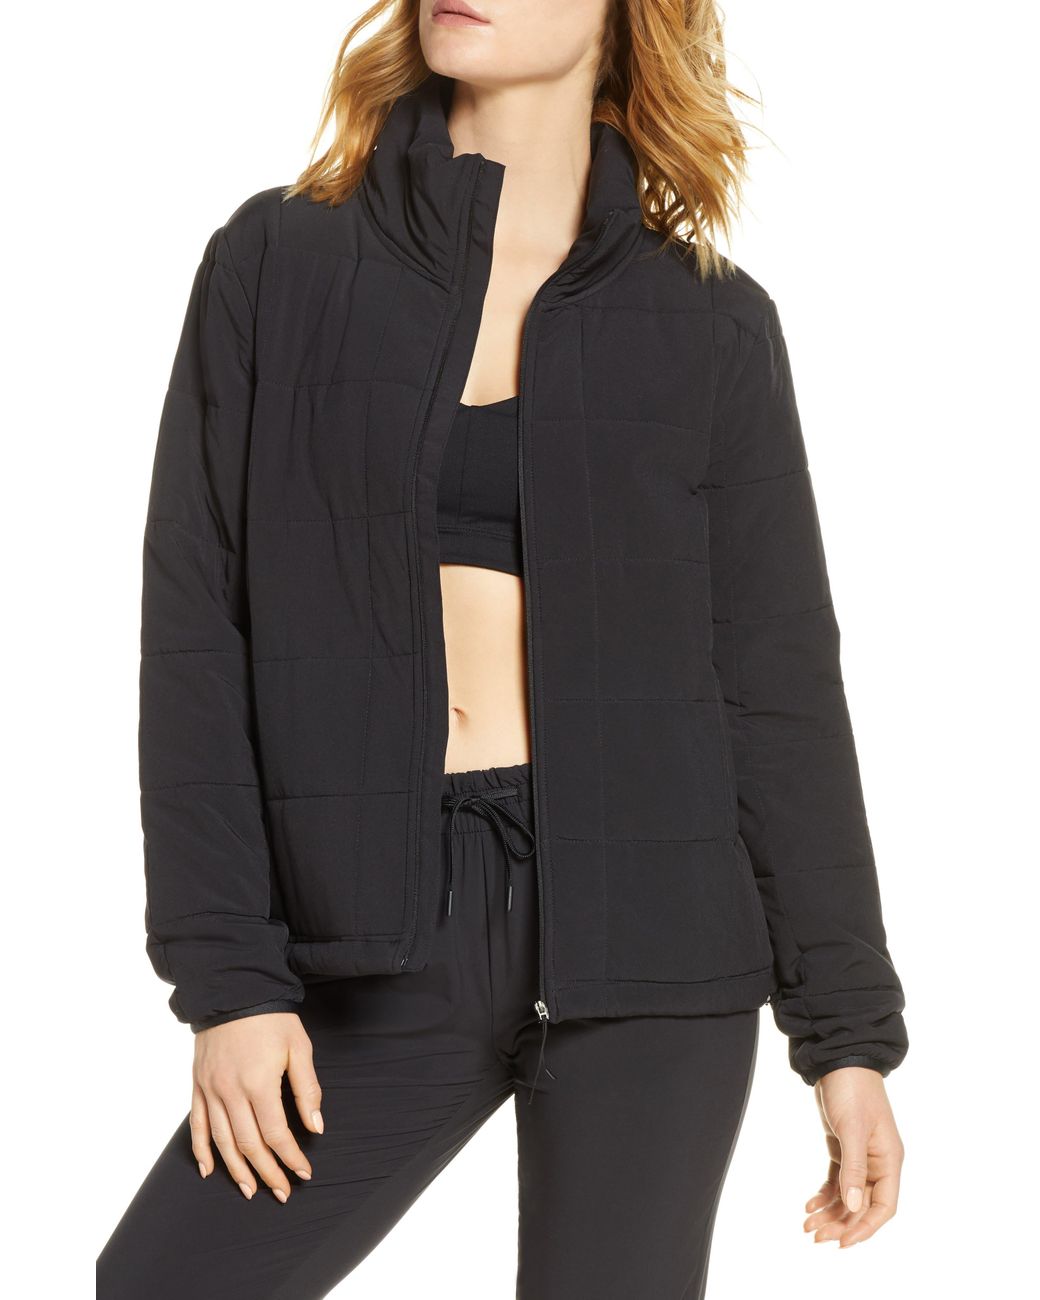 Zella Getaway Quilted Front Zip Jacket in Black | Lyst